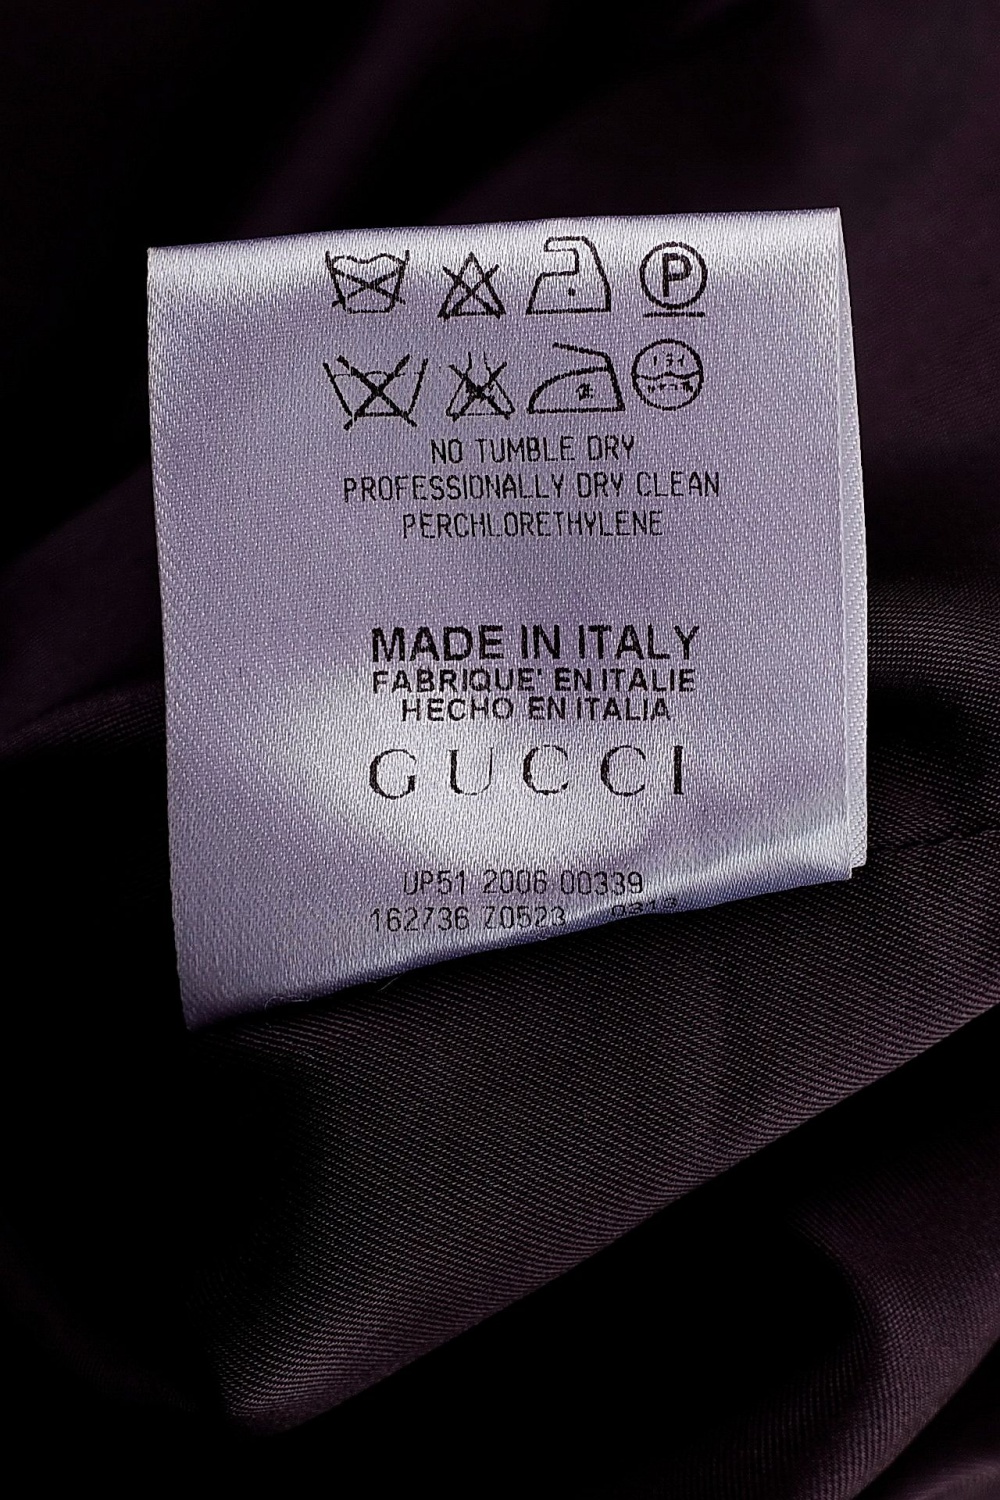 Юбка Gucci сливового цвета вельветовая размер 40 на 42 российский